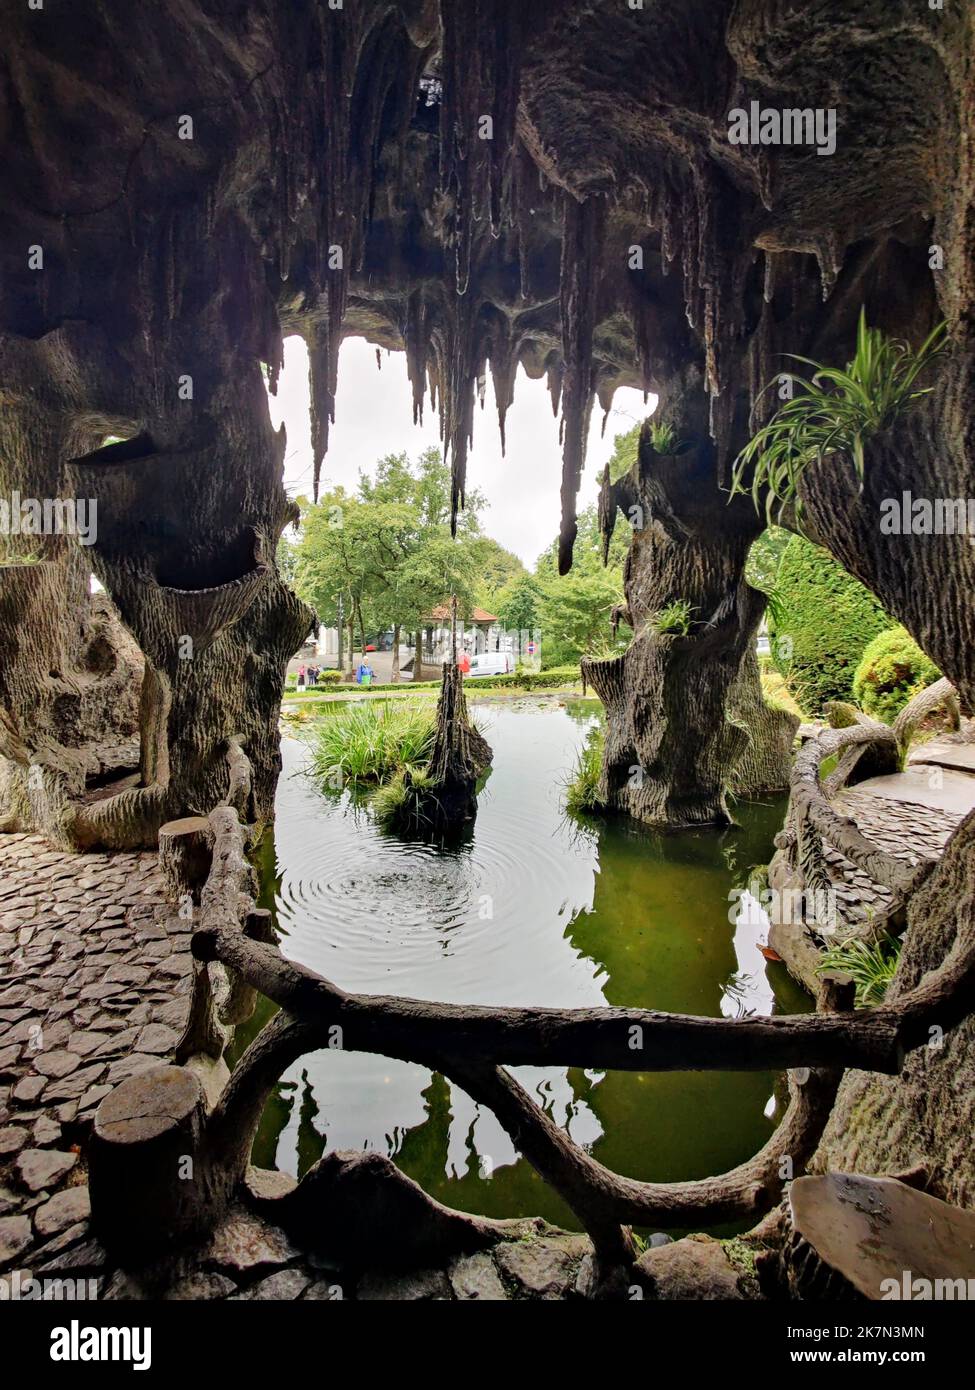 La grotta artificiale e il lago al parco di Bom Jesus do Monte, Braga, Portogallo Foto Stock